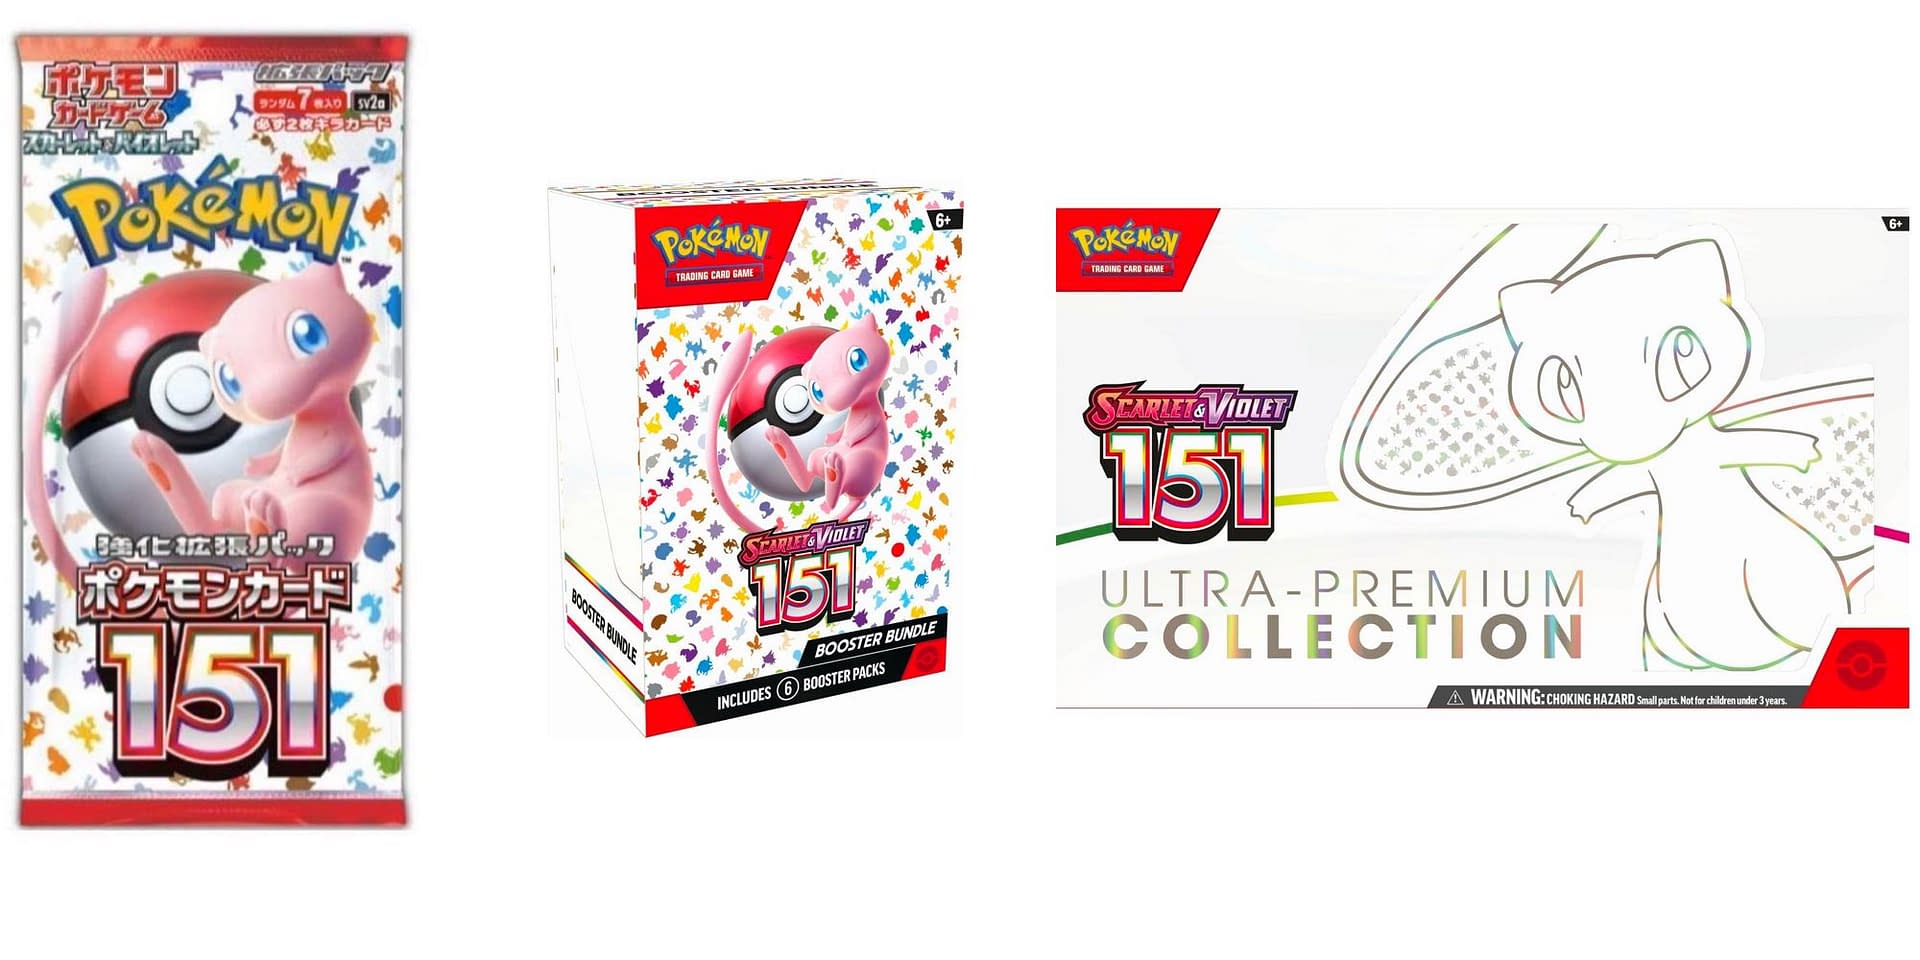 Pokémon TCG: Scarlet & Violet—151 Booster Bundle (6 Booster Packs